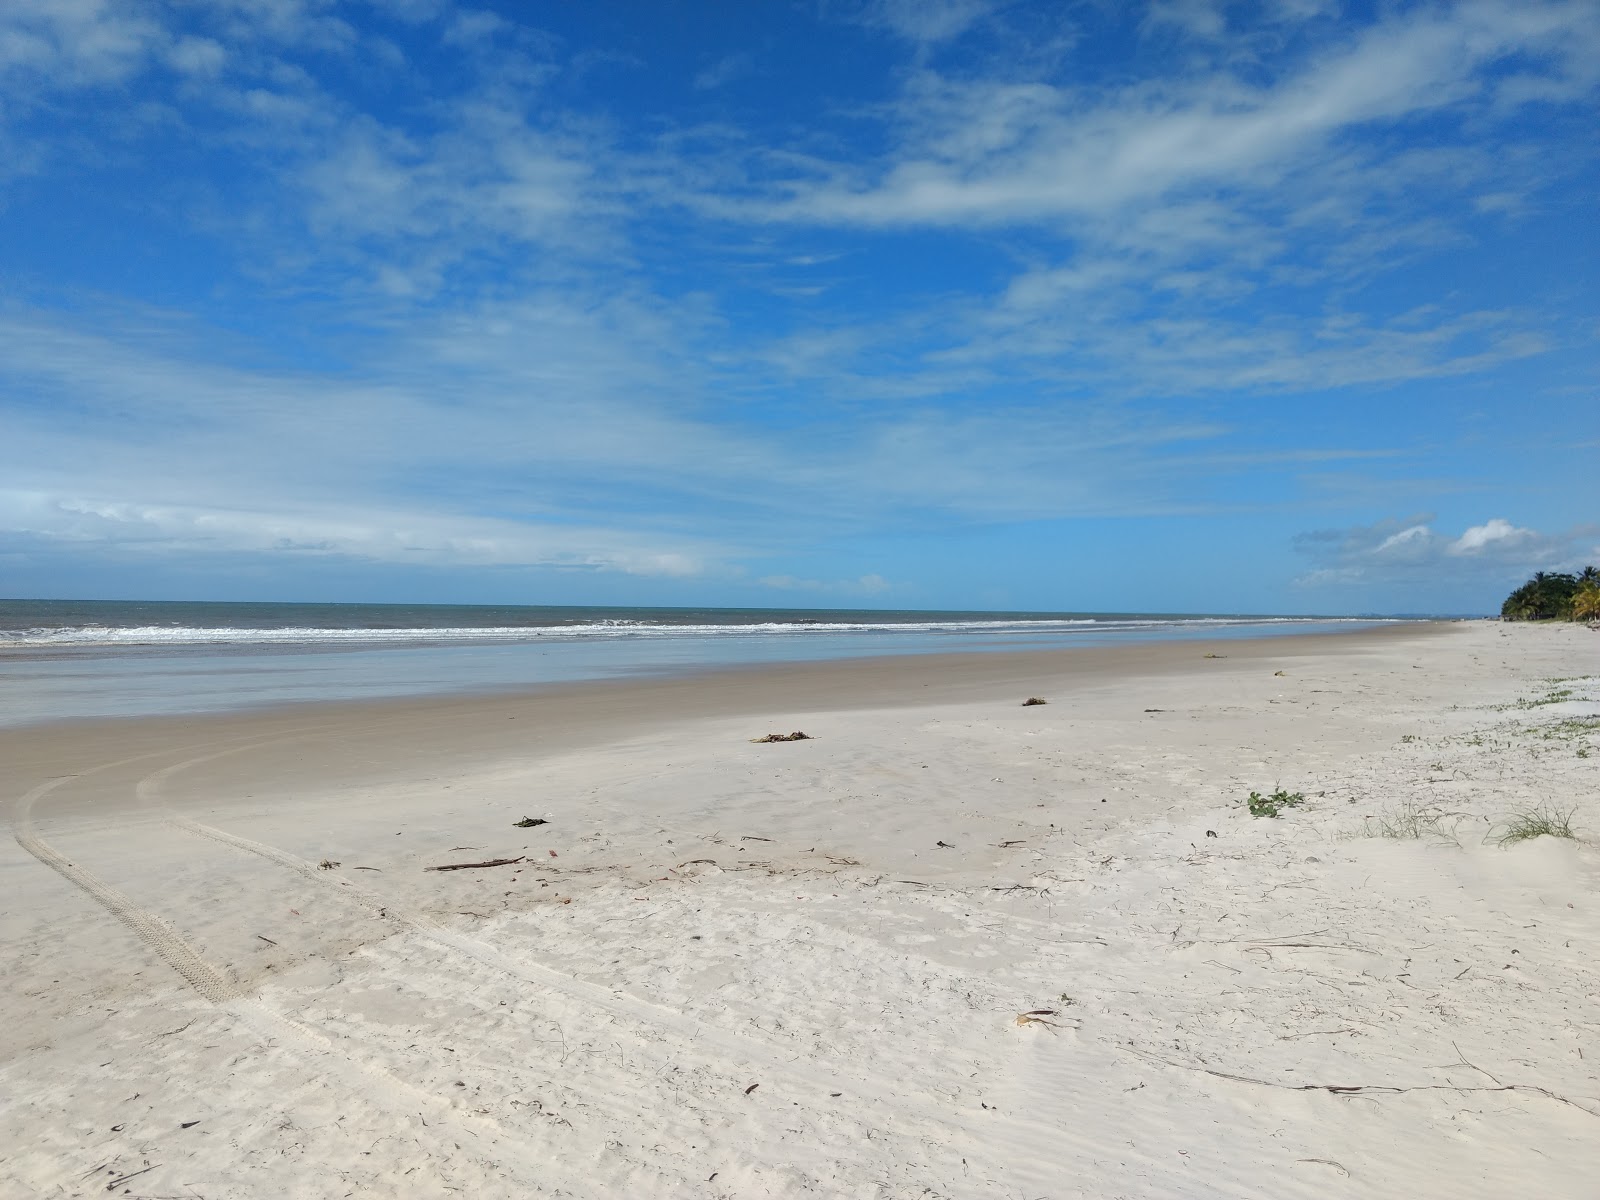 Fotografie cu Praia de Mamoa cu o suprafață de nisip fin strălucitor